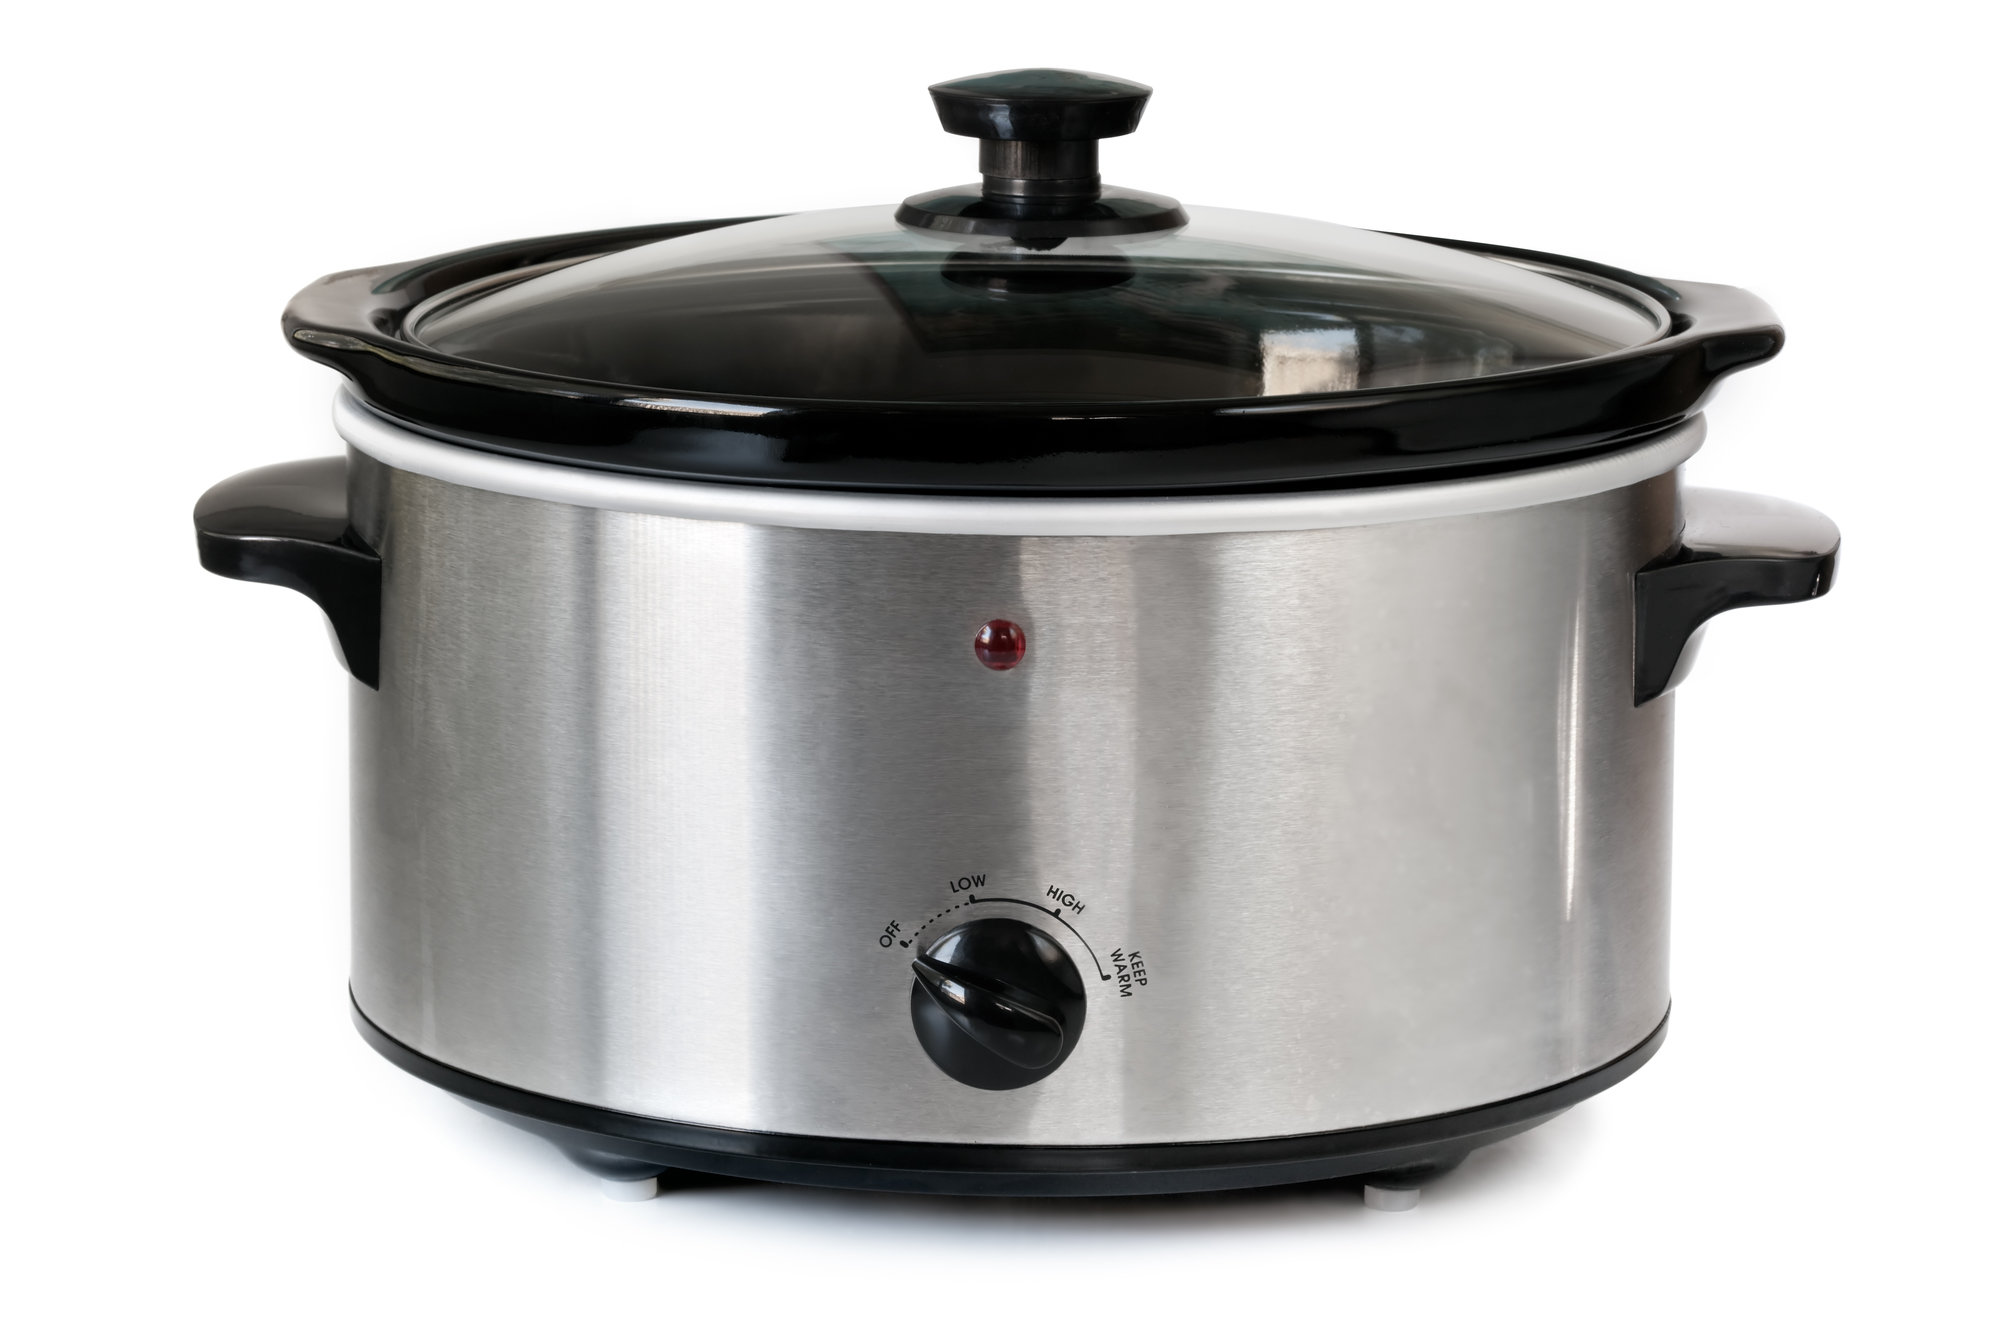 Crock-Pot Lunch Crock - appliances - by owner - sale - craigslist